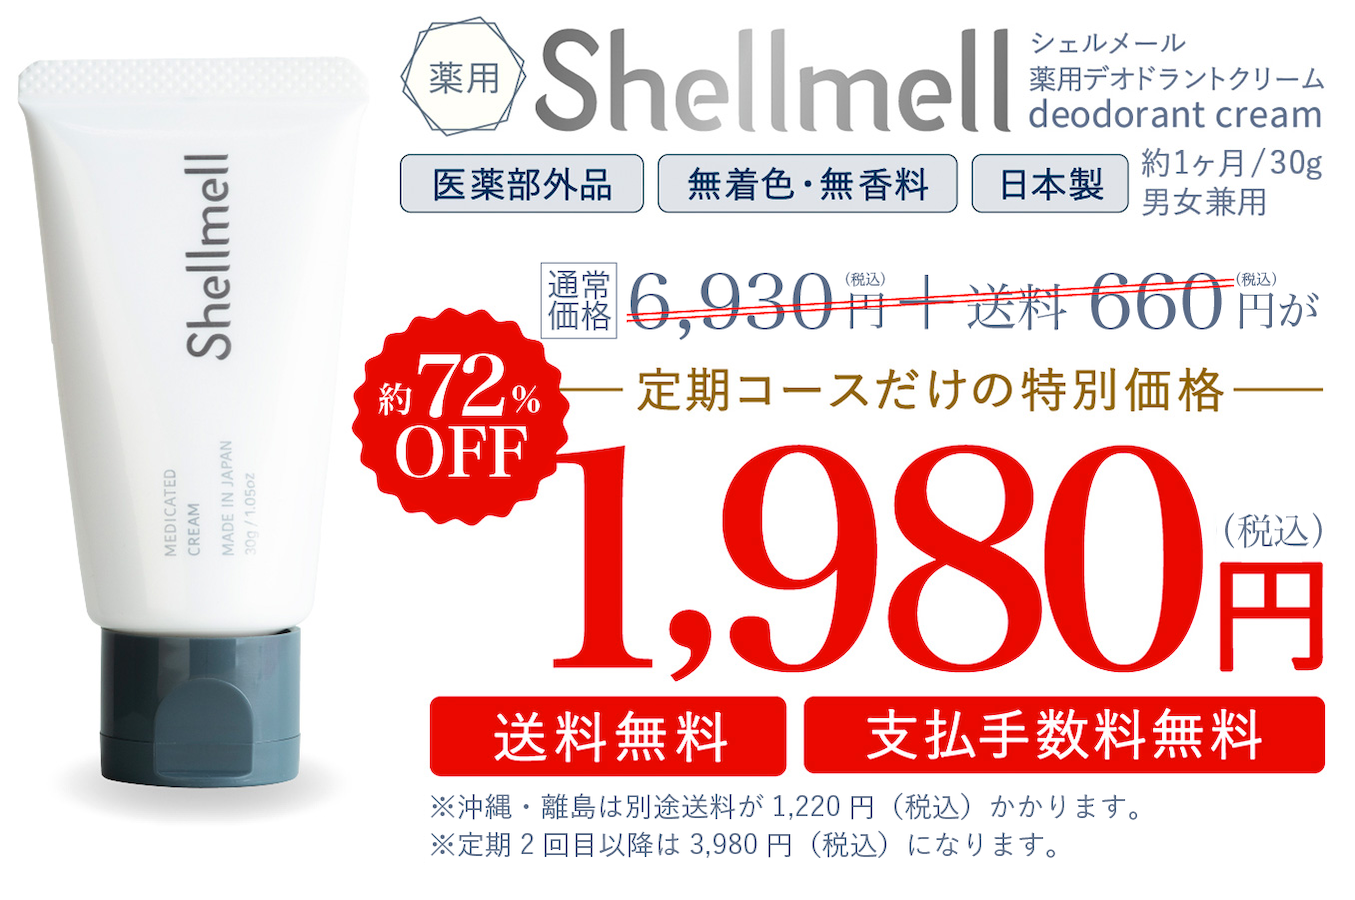 シェルメール 薬用デオドラントクリームdeodorant cream定期コースだけの特別価格２９％OFF　4,980円 (税抜)